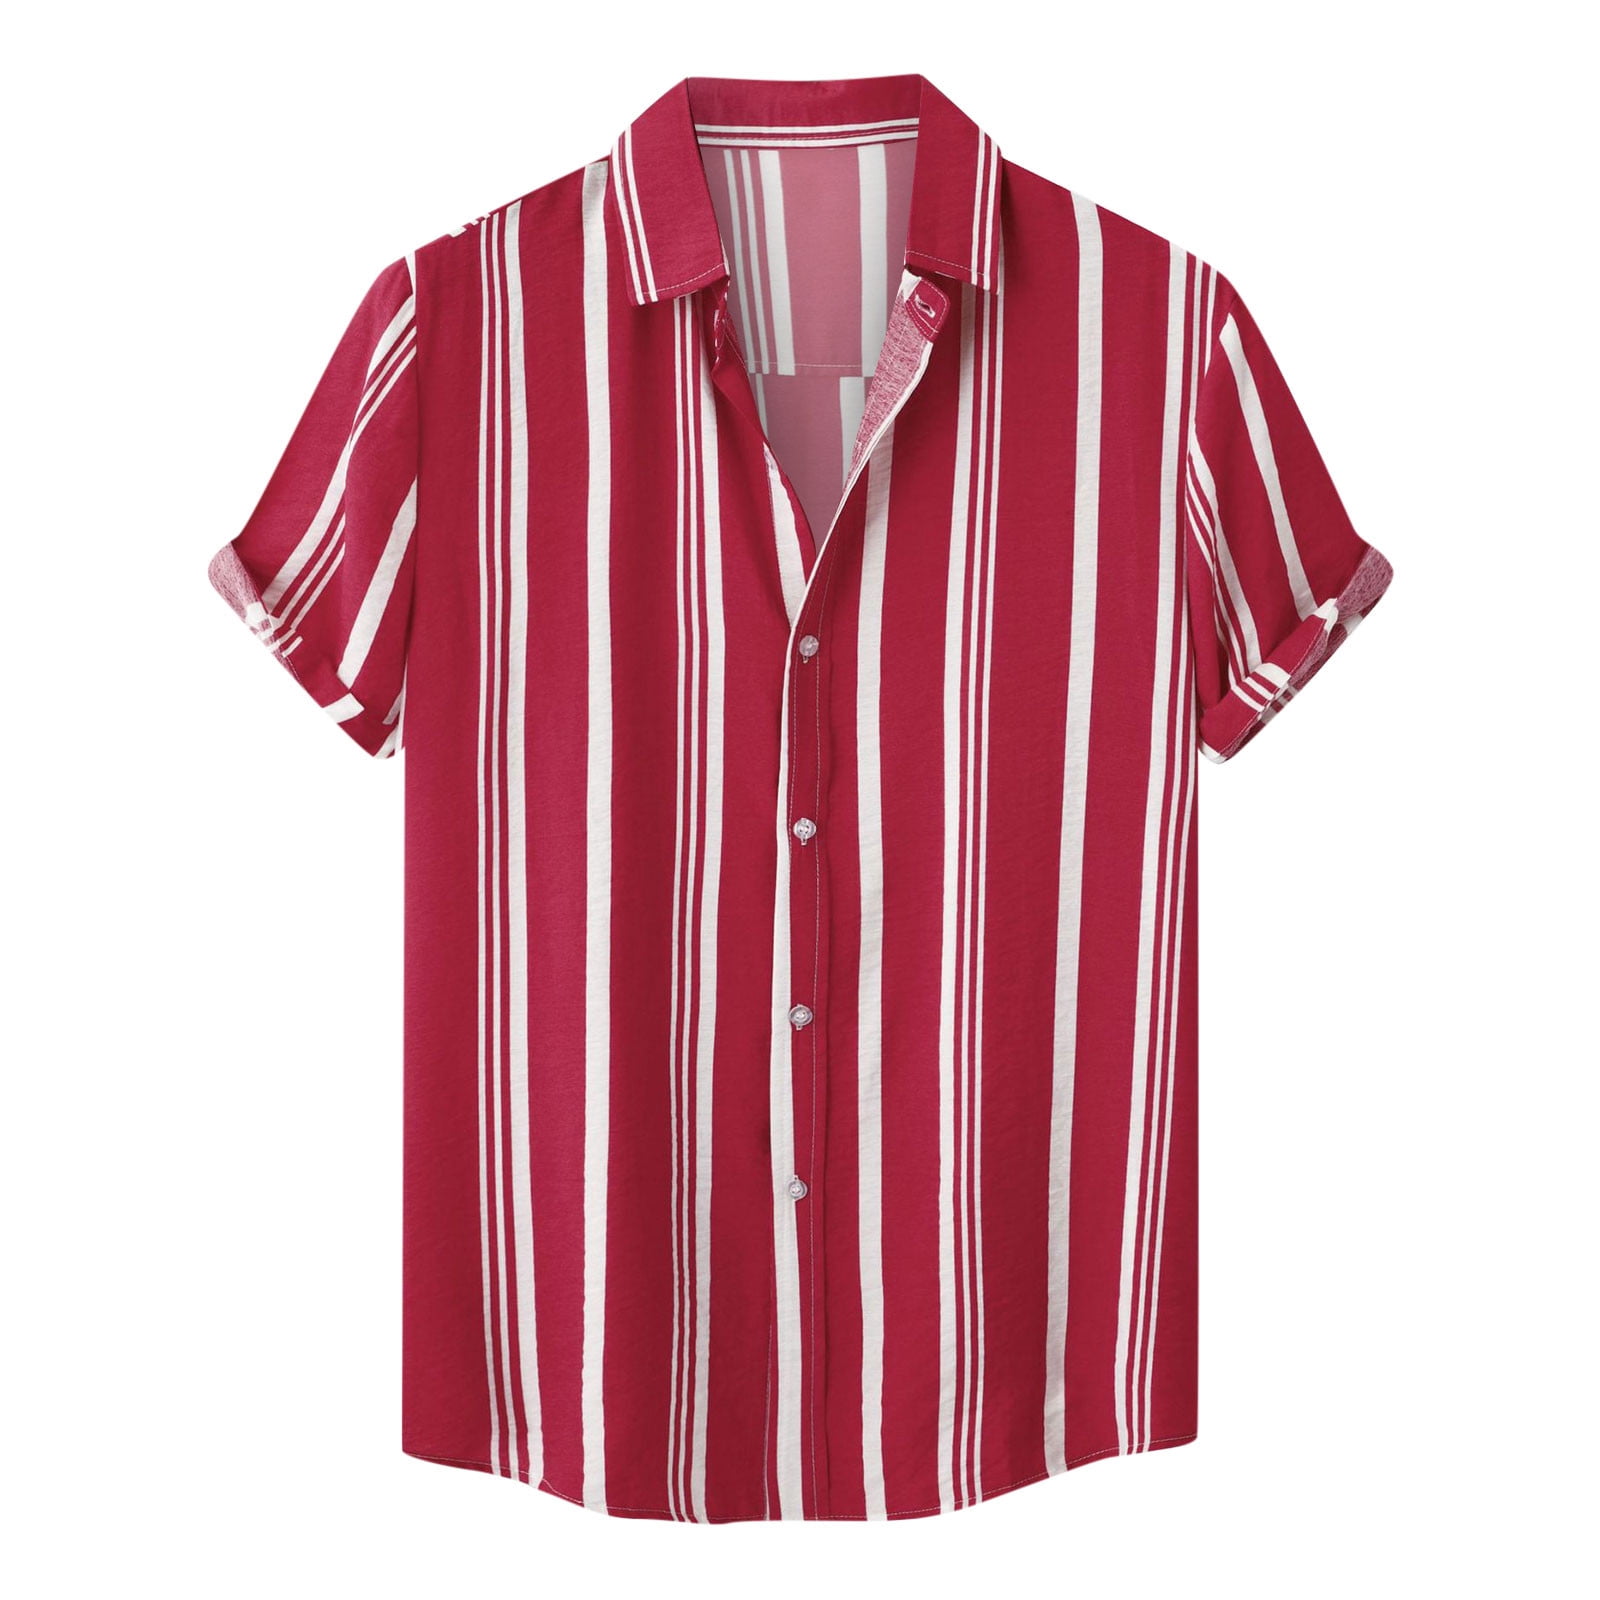 amelAEA Mens Button Up Shirts Short Sleeve Collar Summer Beach T Shirts ...